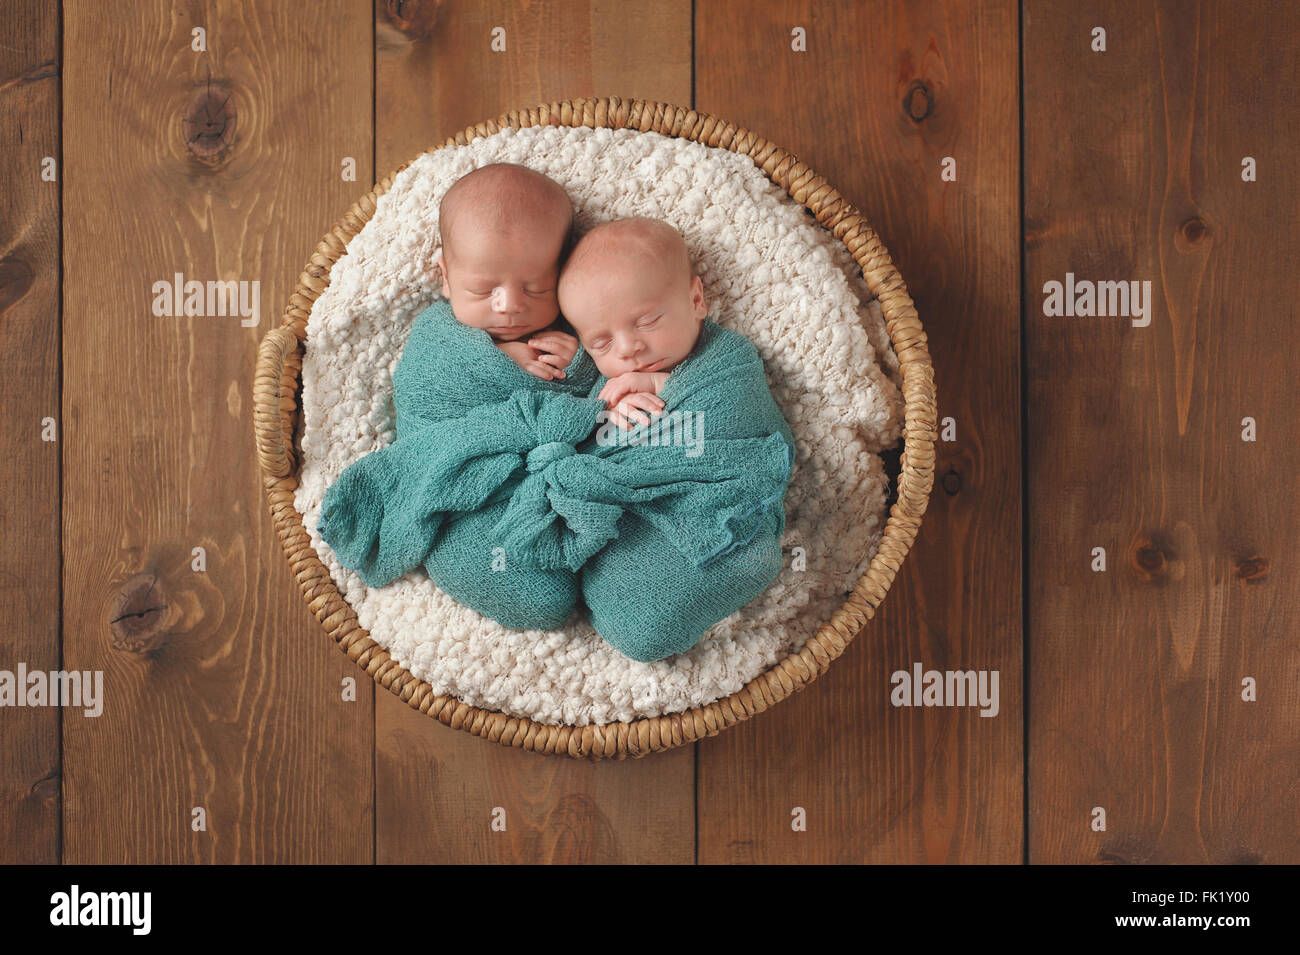 Lits jumeaux nouveau-nés garçons de bébé dormir dans un panier en osier. Banque D'Images